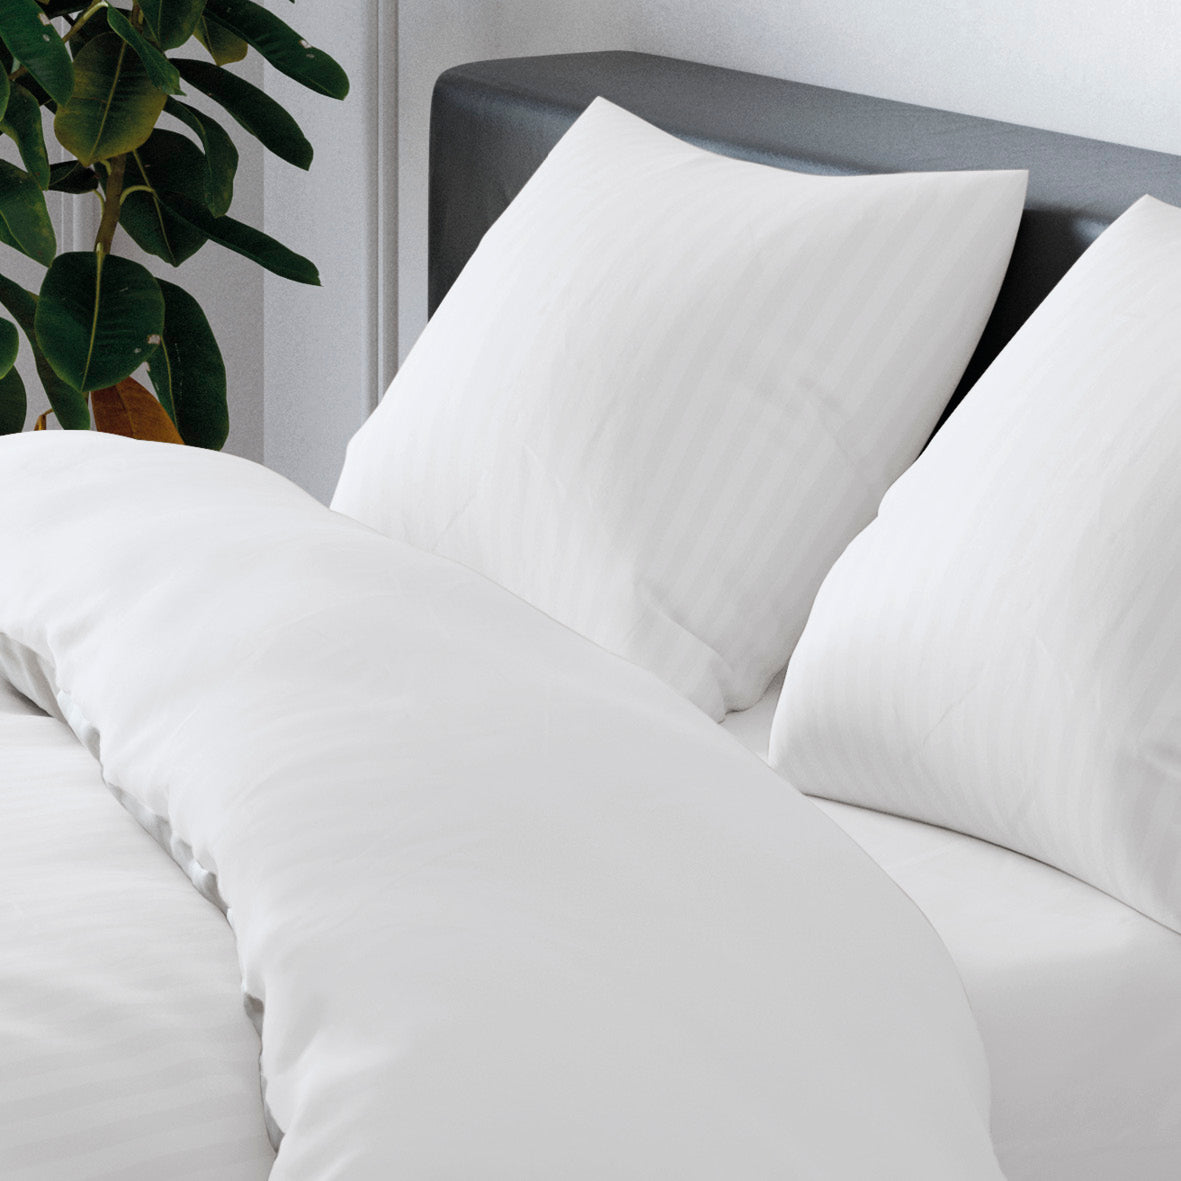 Duvet cover + pillowcase cotton satin dobby stripe woven White